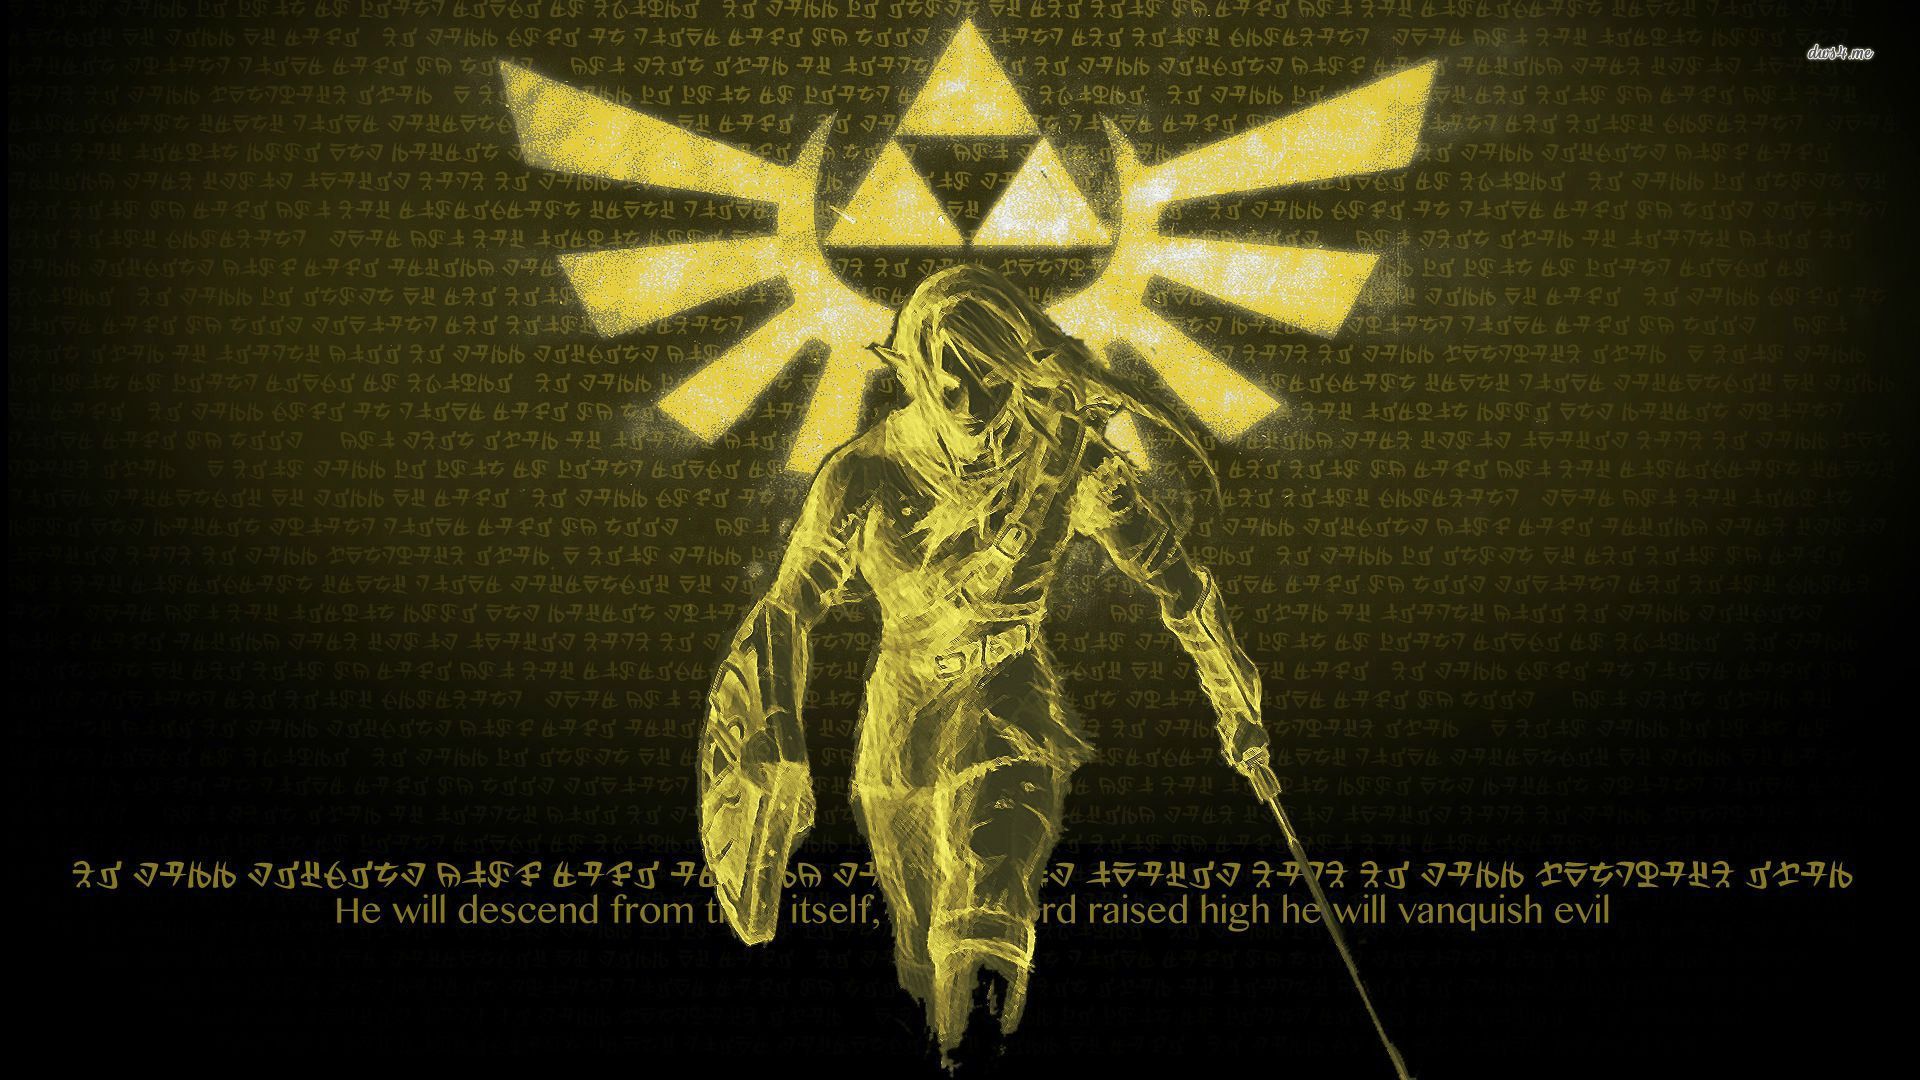 The Legend of Zelda wallpaper - Game wallpapers - #30427